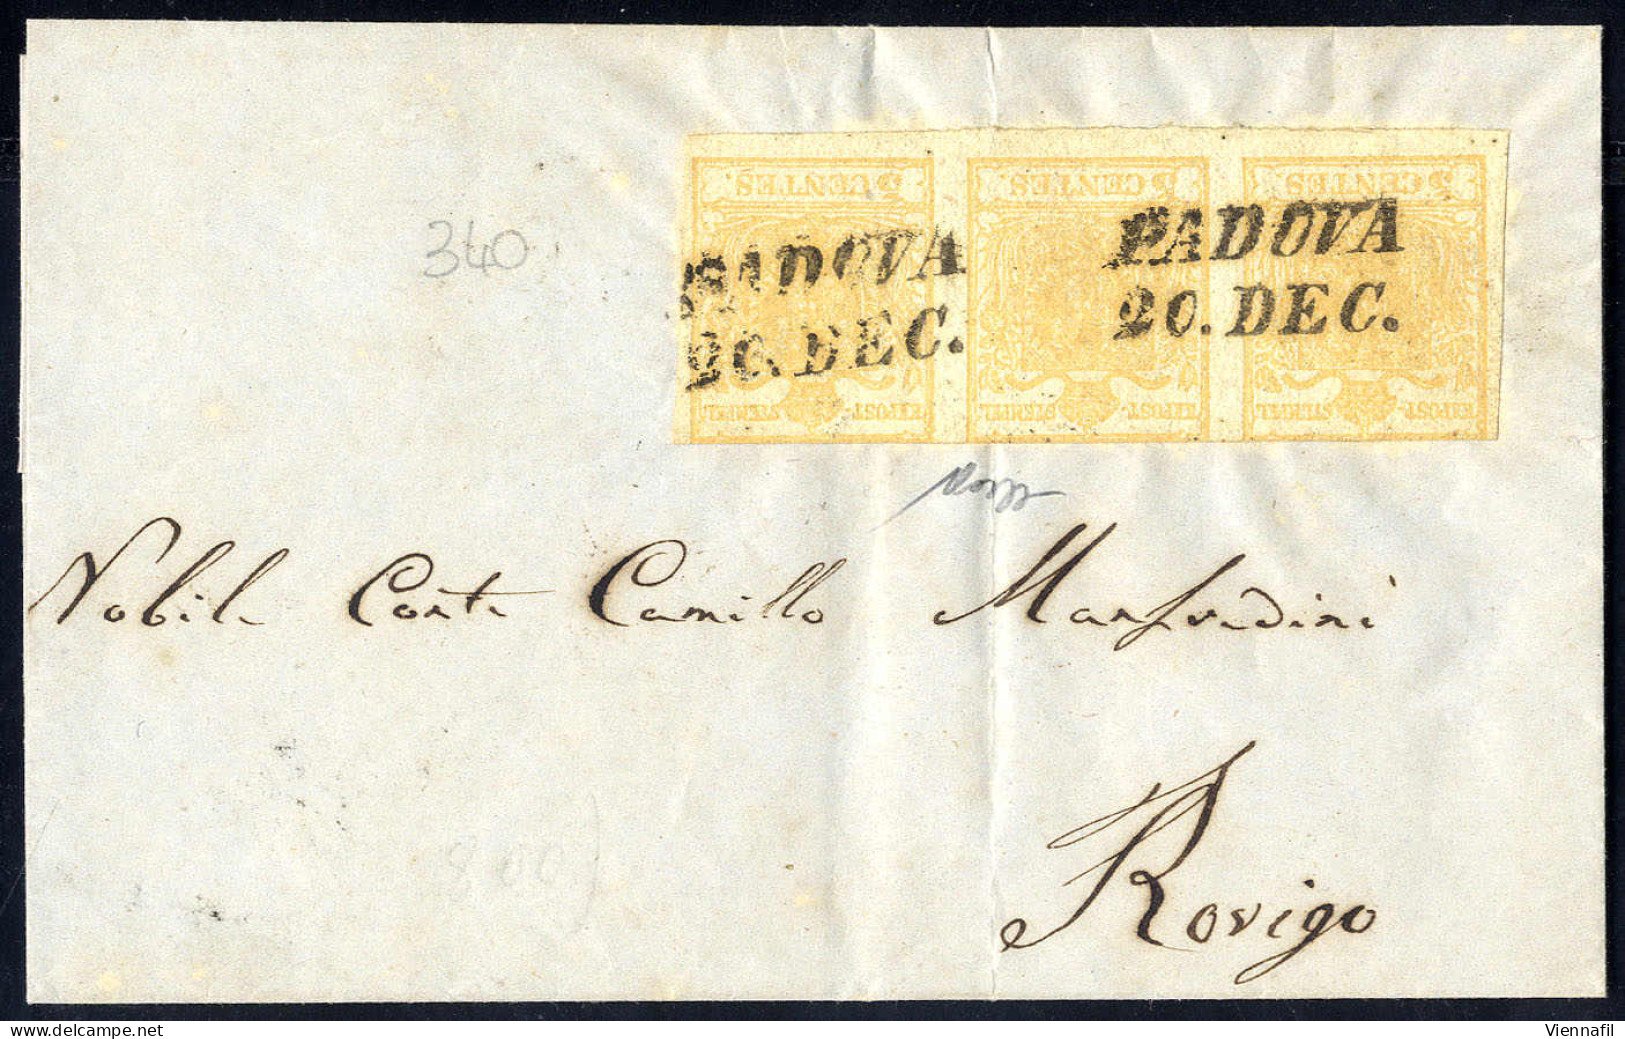 Cover 1850, 5 Cent, Giallo Arancio Chiaro, Striscia Di Tre (a Filo In Alto) Su Lettera Da Padova Per Rovigo, Firm. Caffa - Lombardo-Venetien